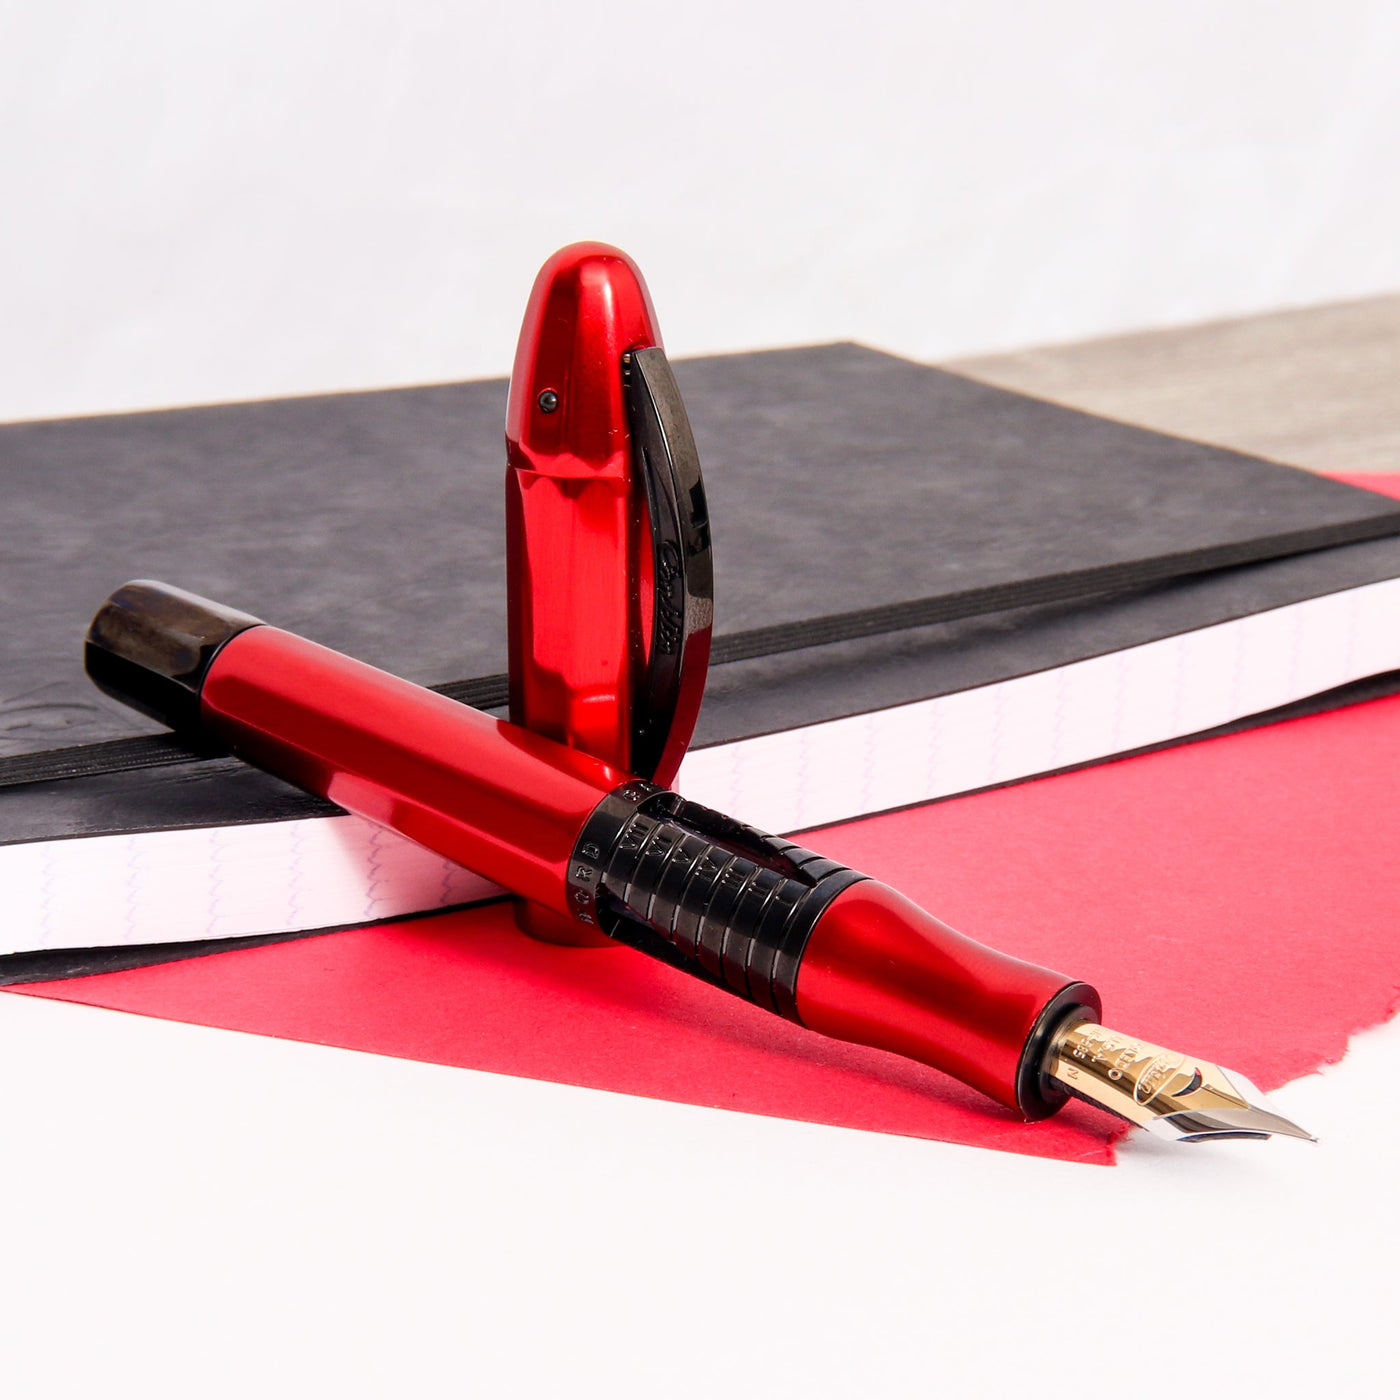 Conklin-Nozac-Classic-125th-Anniversary-Red-Fountain-Pen-Uncapped